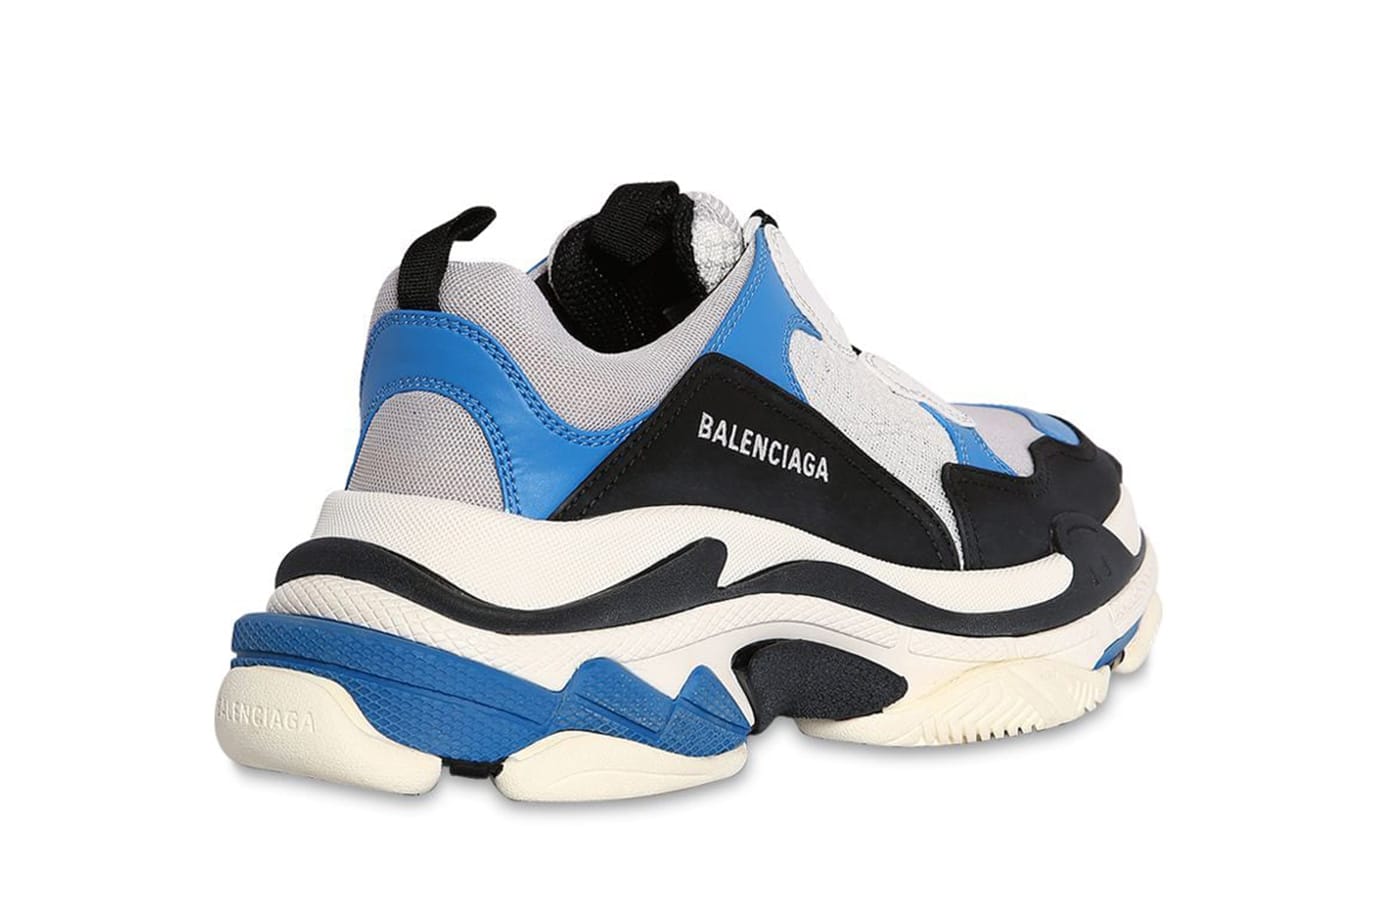 Balenciaga Triple S Retro Sneaker retro sneaker in 2019